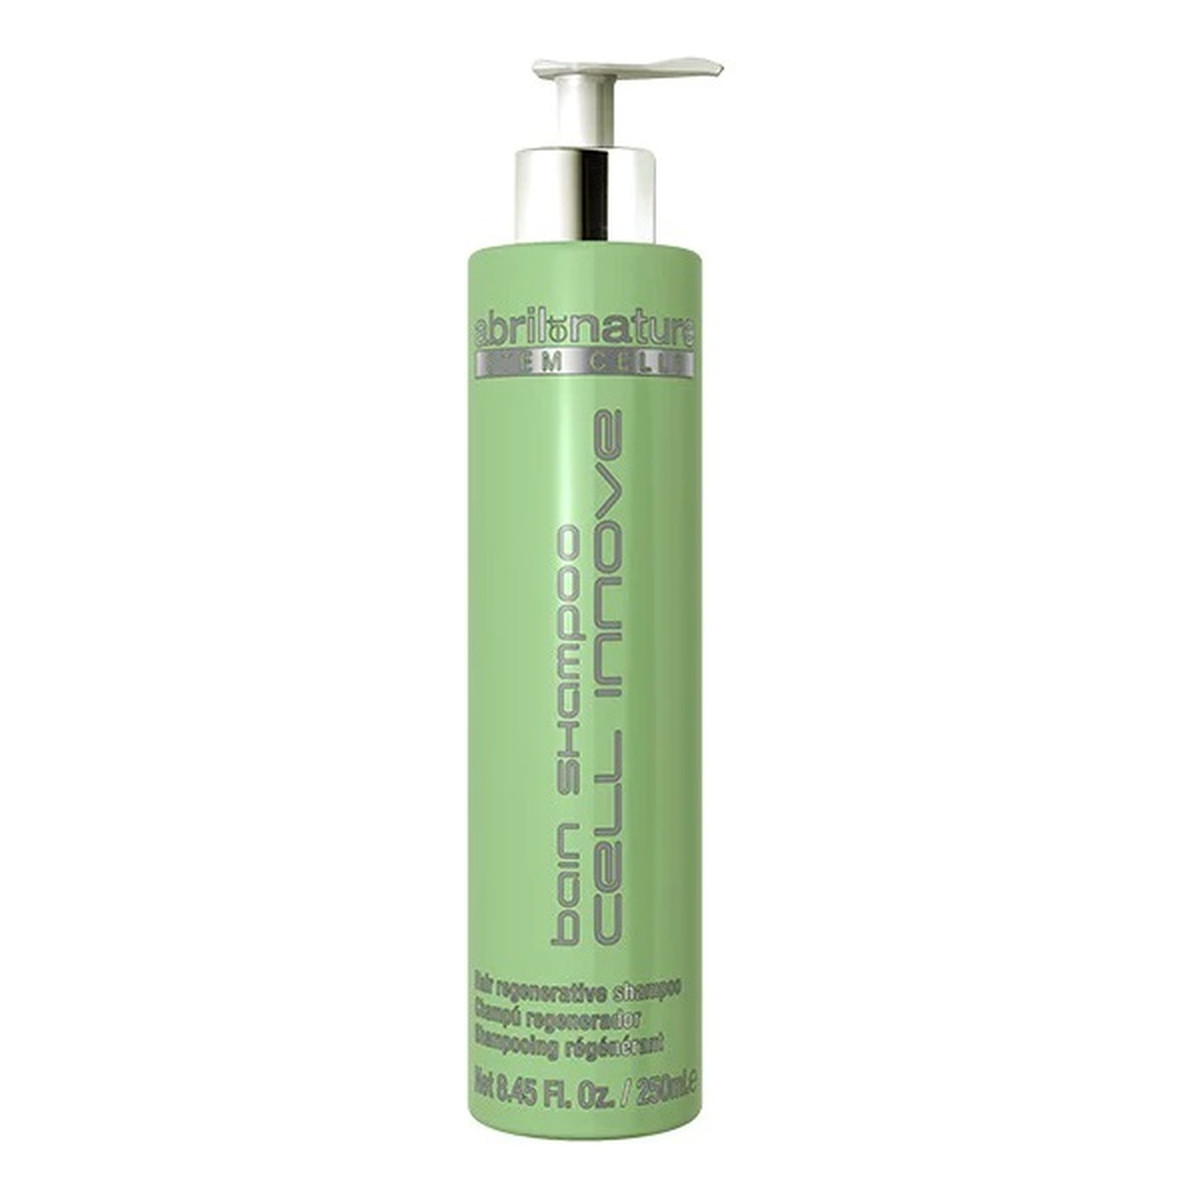 Abril Et Nature Cell innove bain shampoo szampon regenerujący z komórkami macierzystymi 250ml